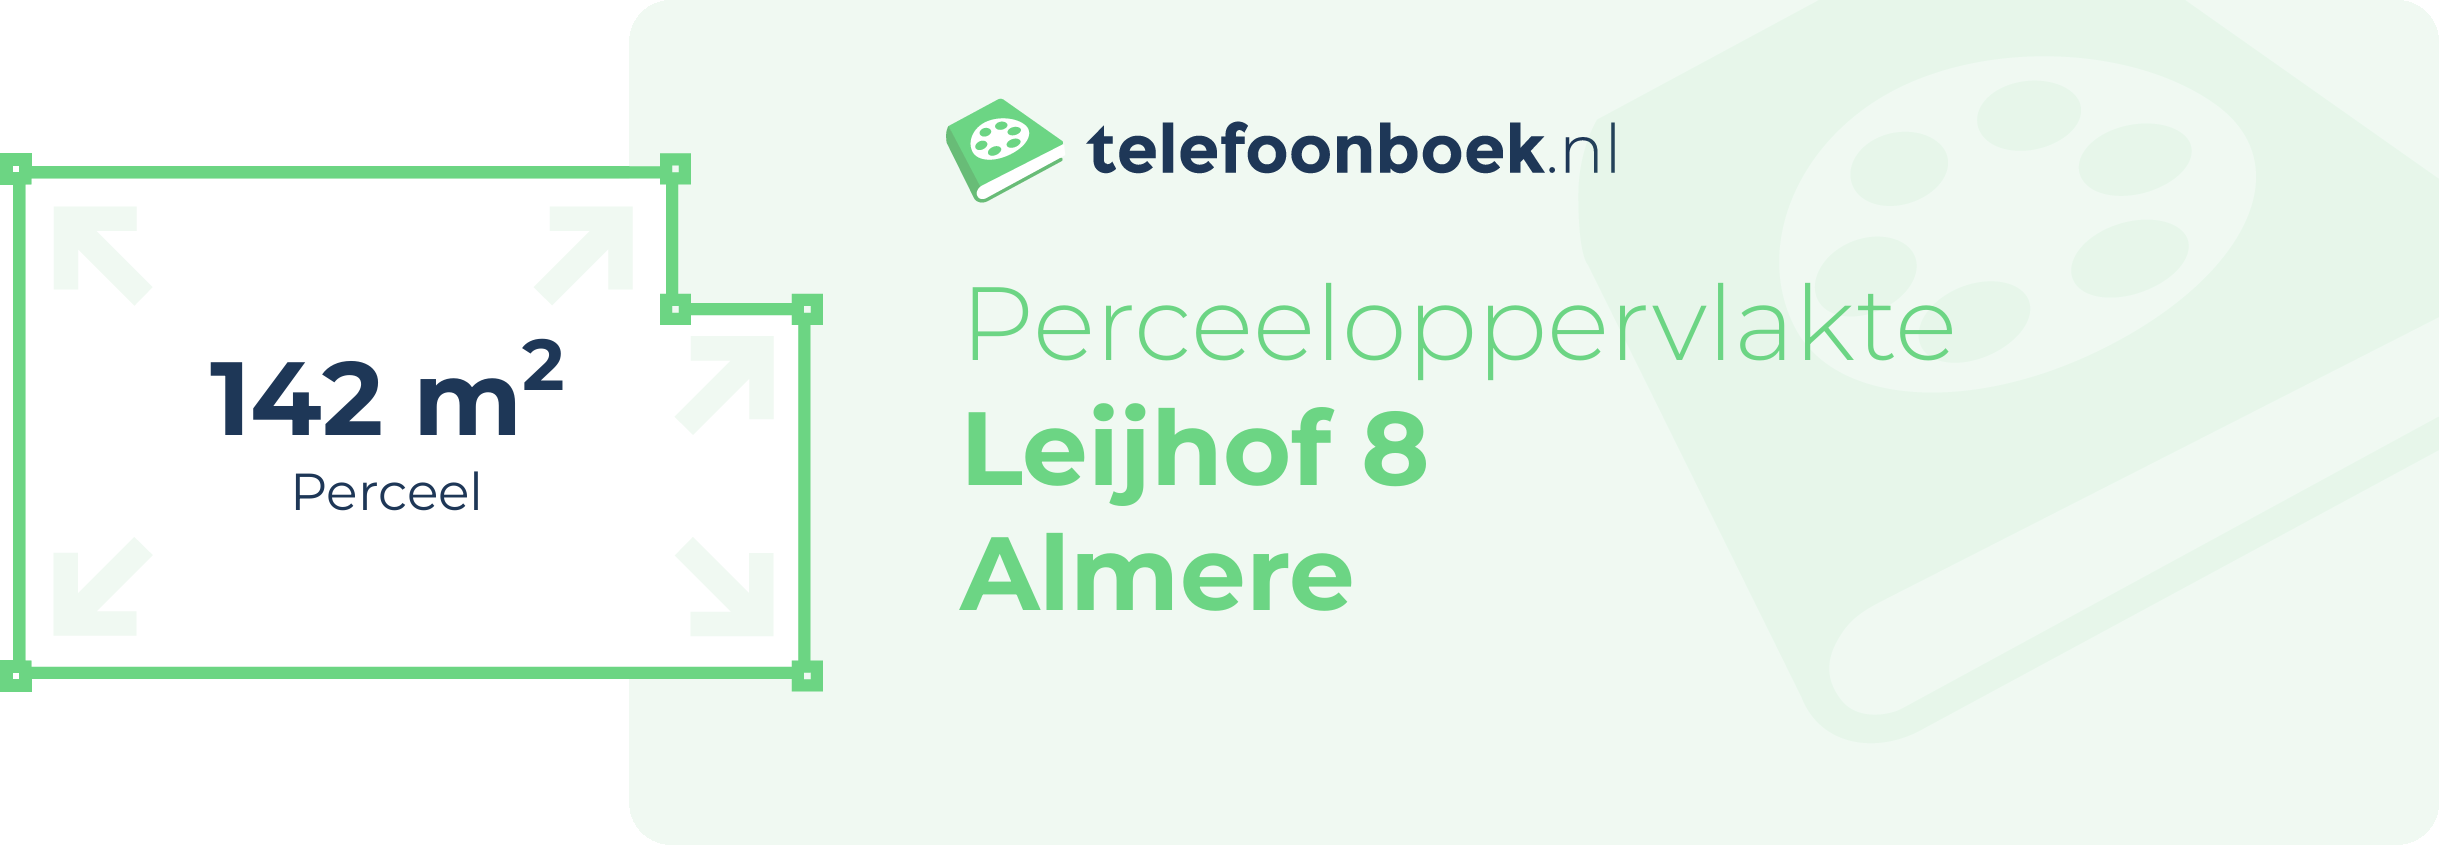 Perceeloppervlakte Leijhof 8 Almere